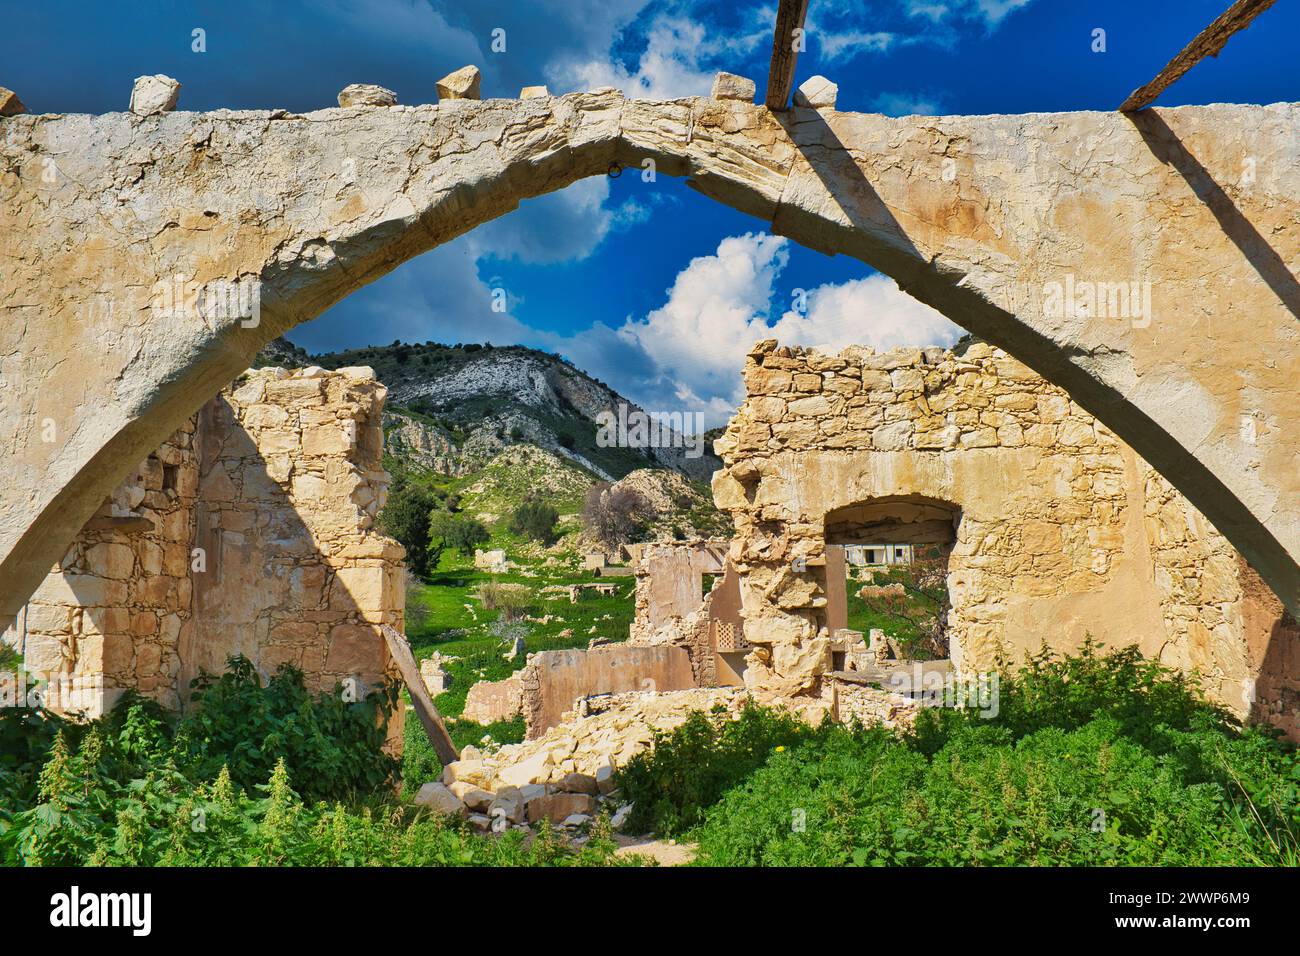 Arche dans le bastion des Templiers du XIIe siècle ruiné de Foinikas (Phoinikas, Finikas) dans la vallée de Xeropotamos, Paphos, Chypre Banque D'Images